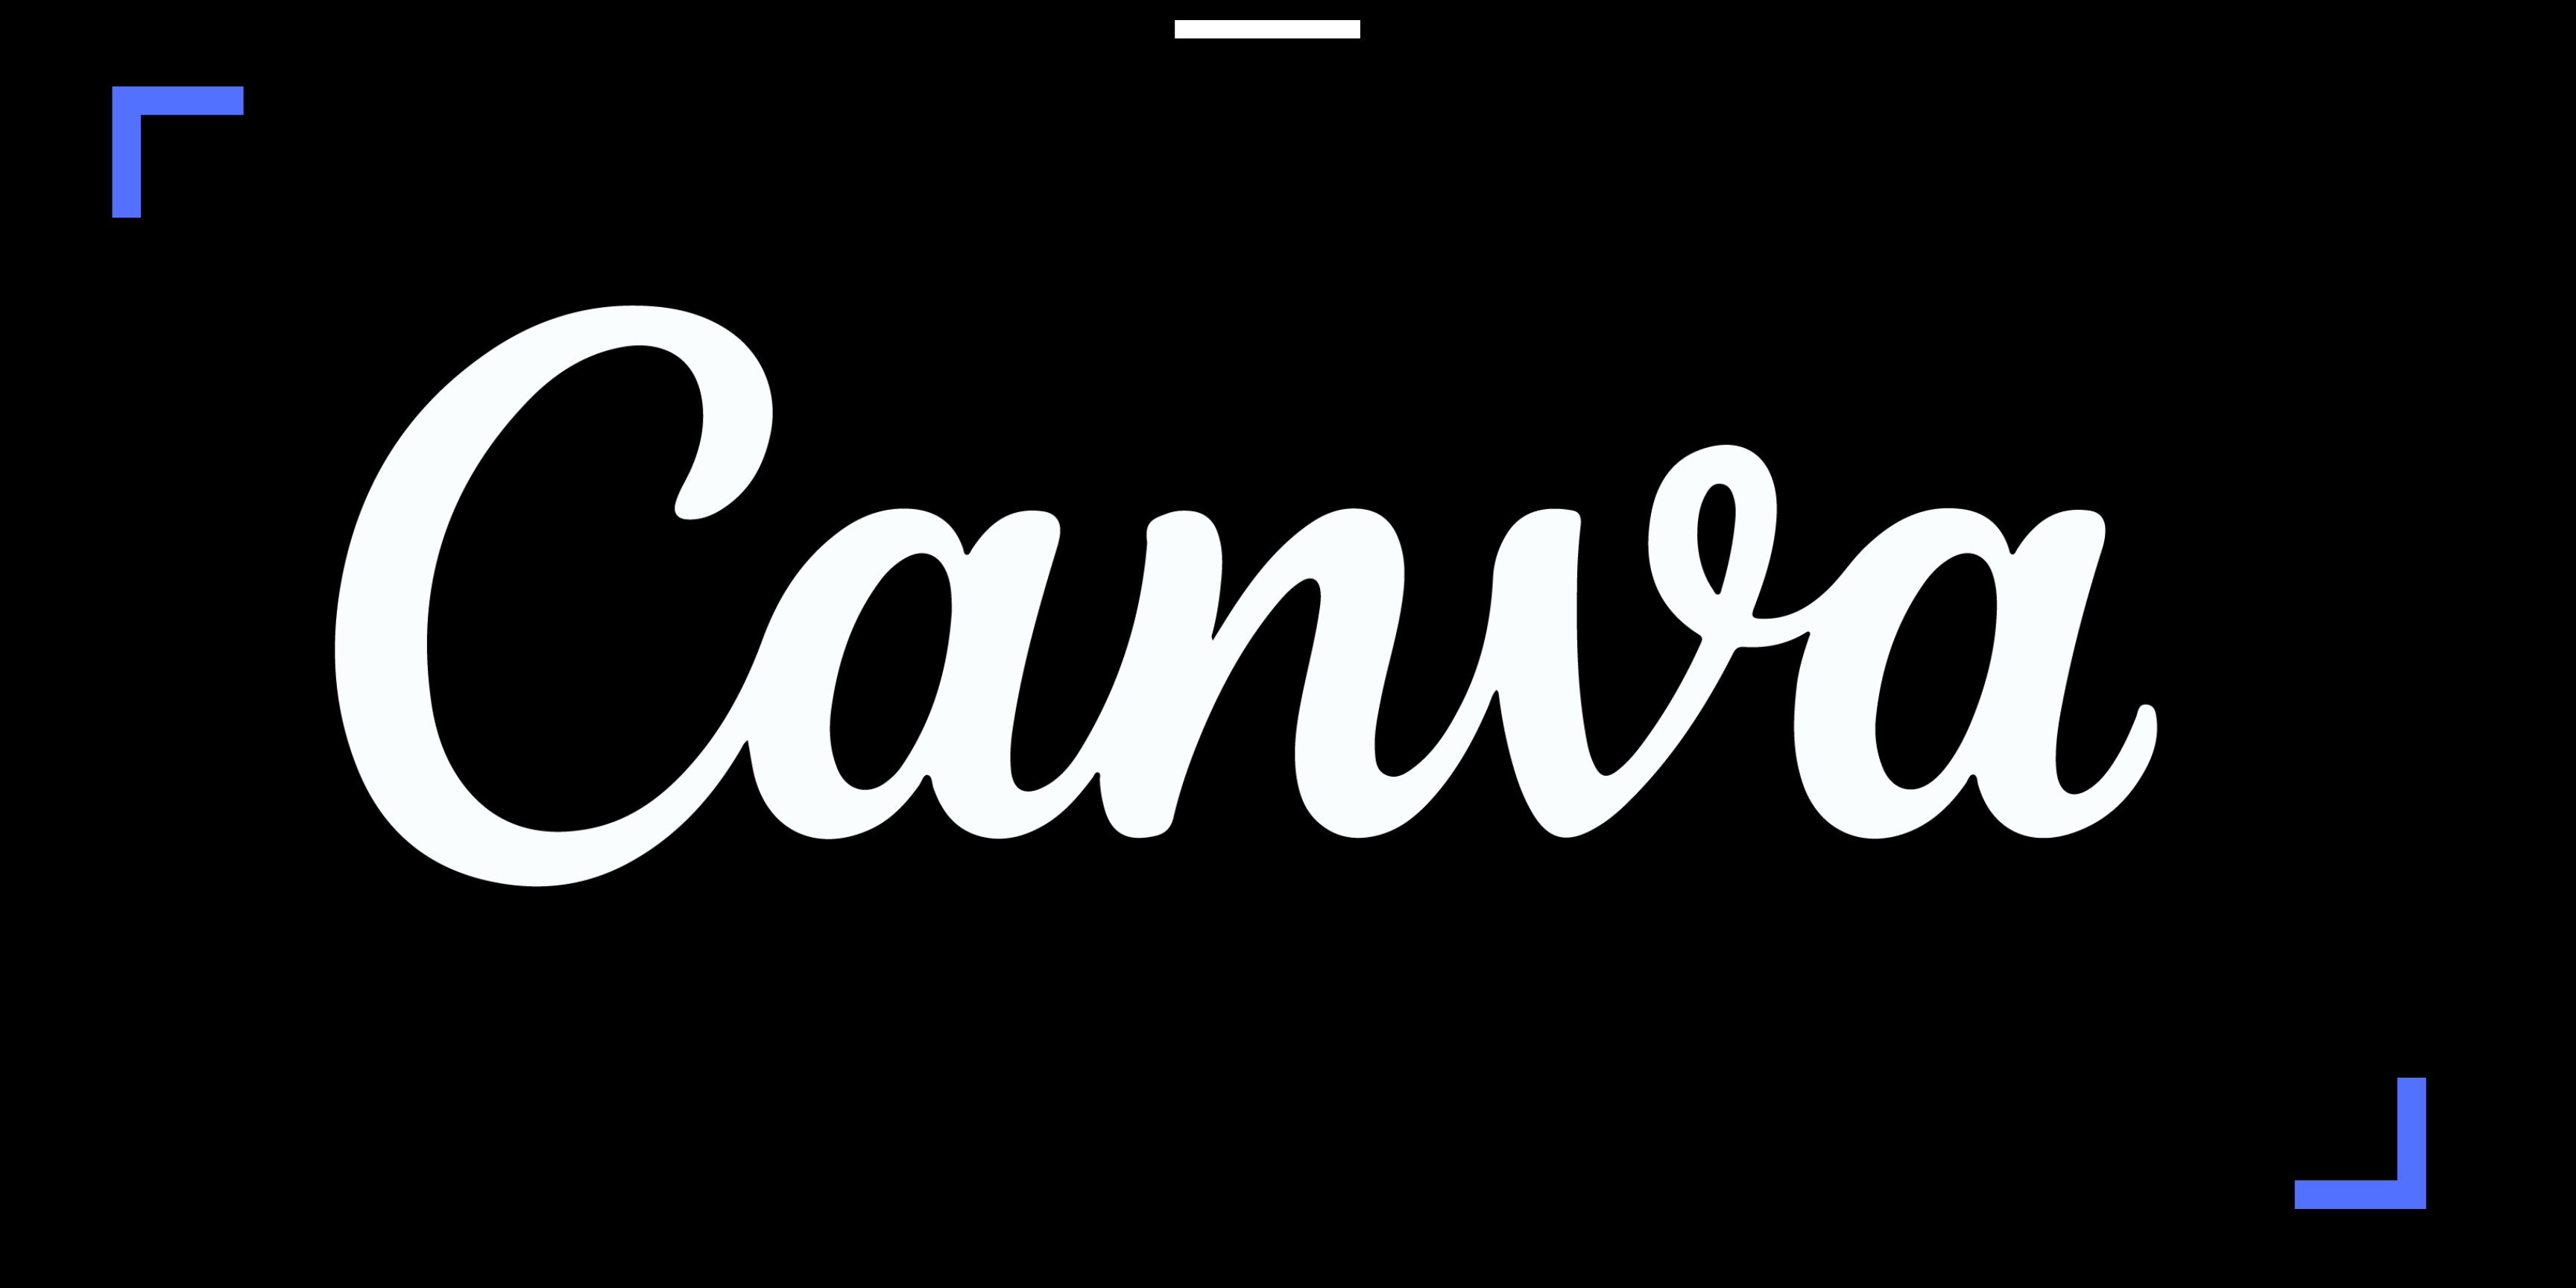 Website Maken Maken In Canva Social Media Company